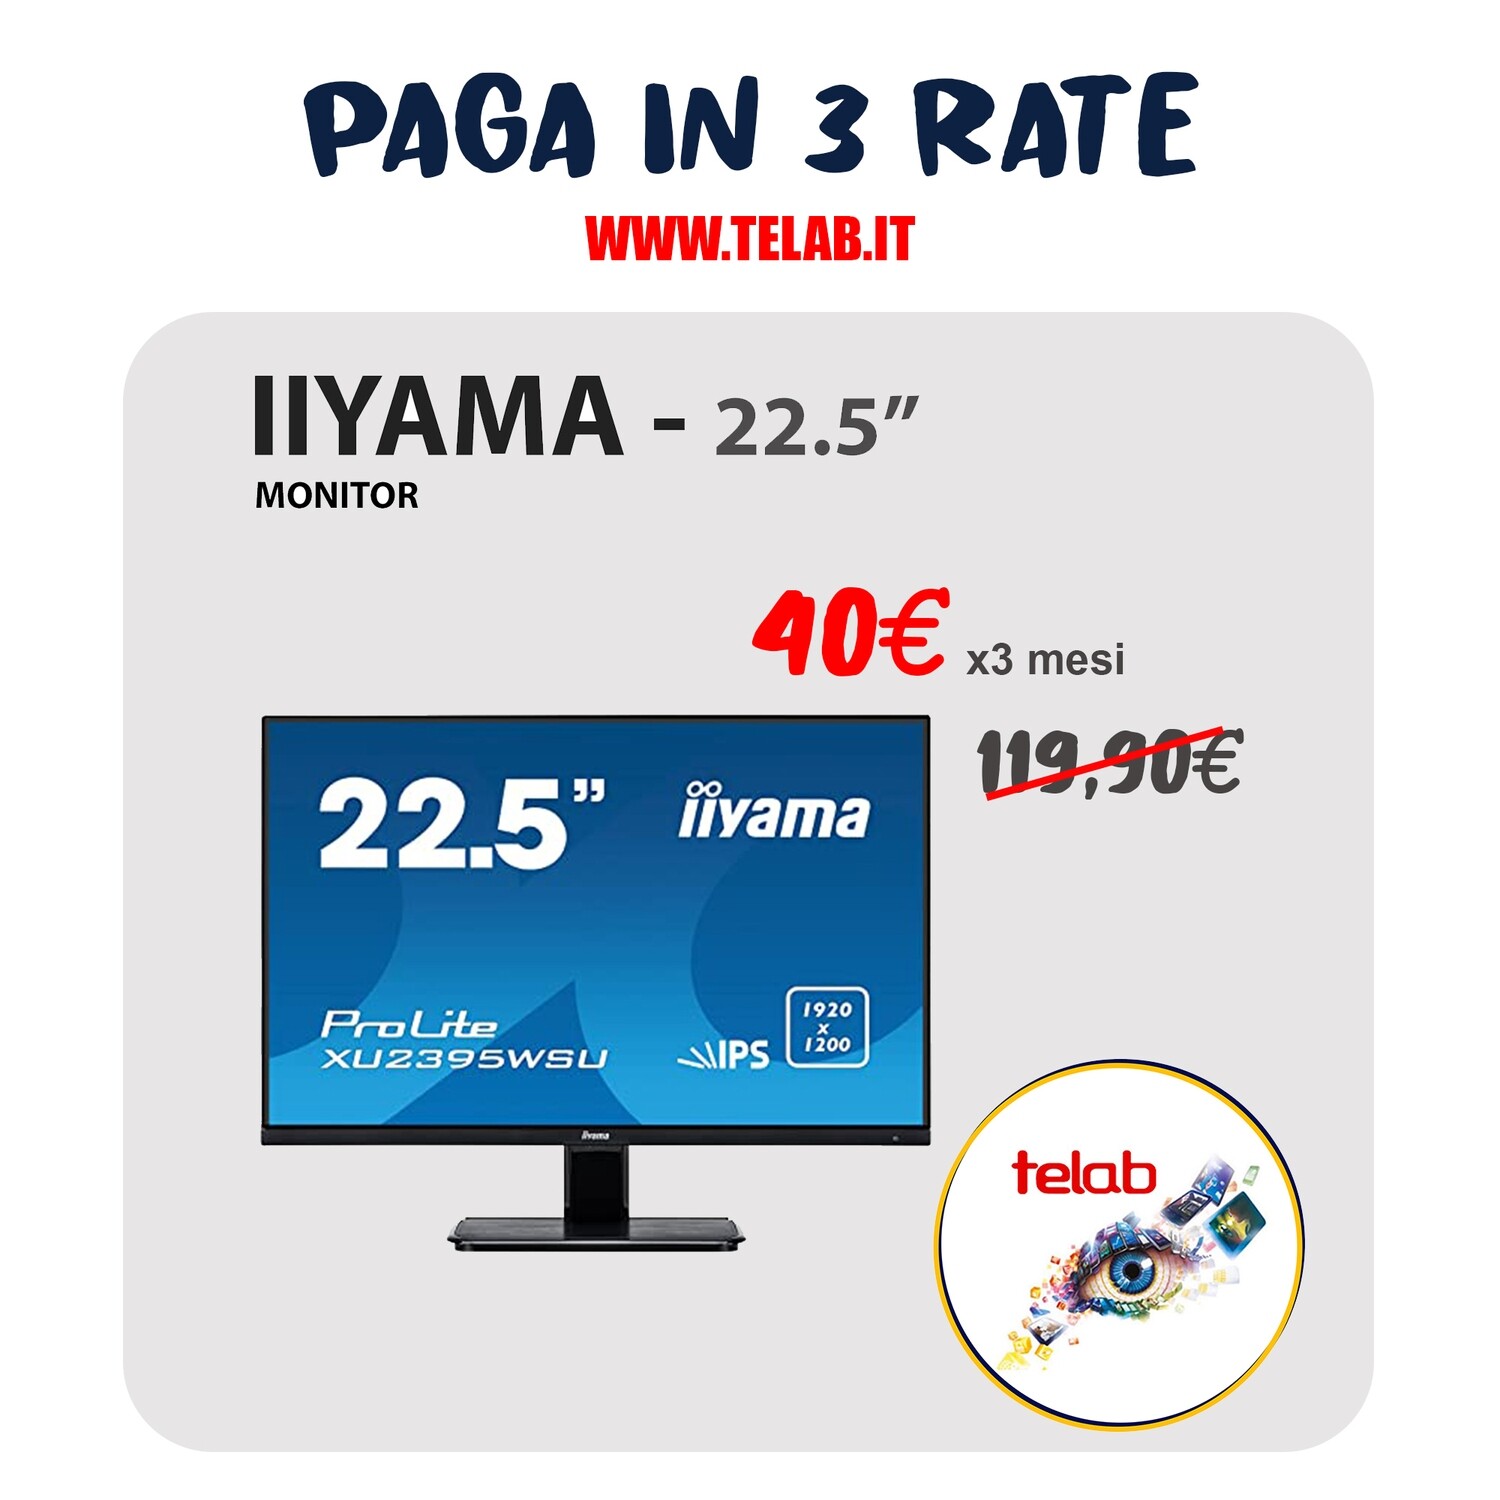 Monitor IIYAMA - 22.5"